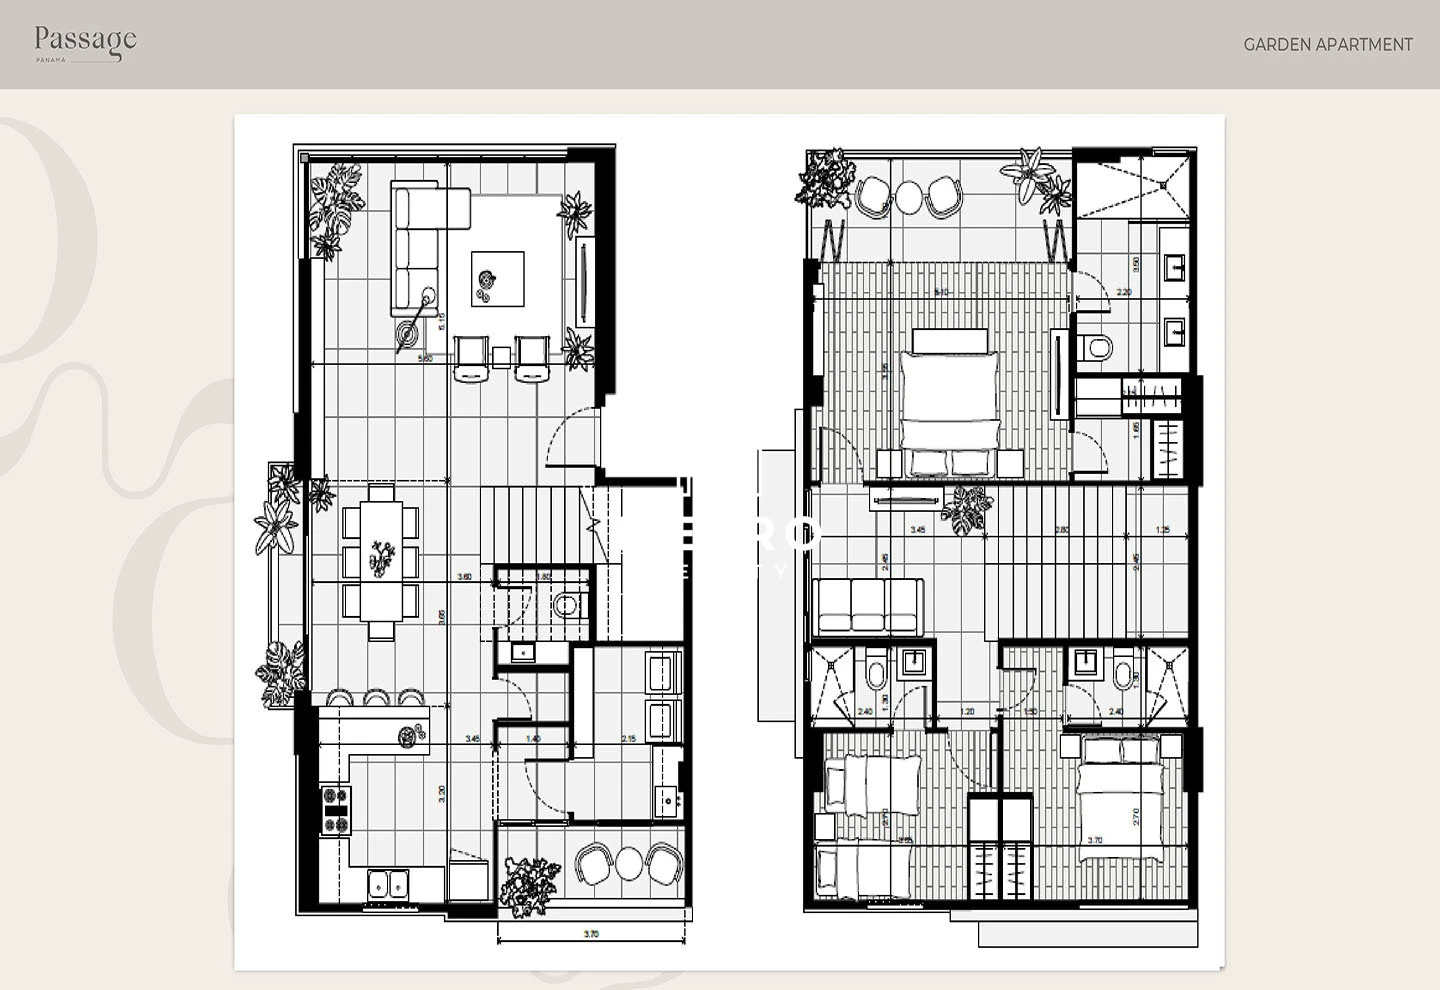 passage garden apartment layout